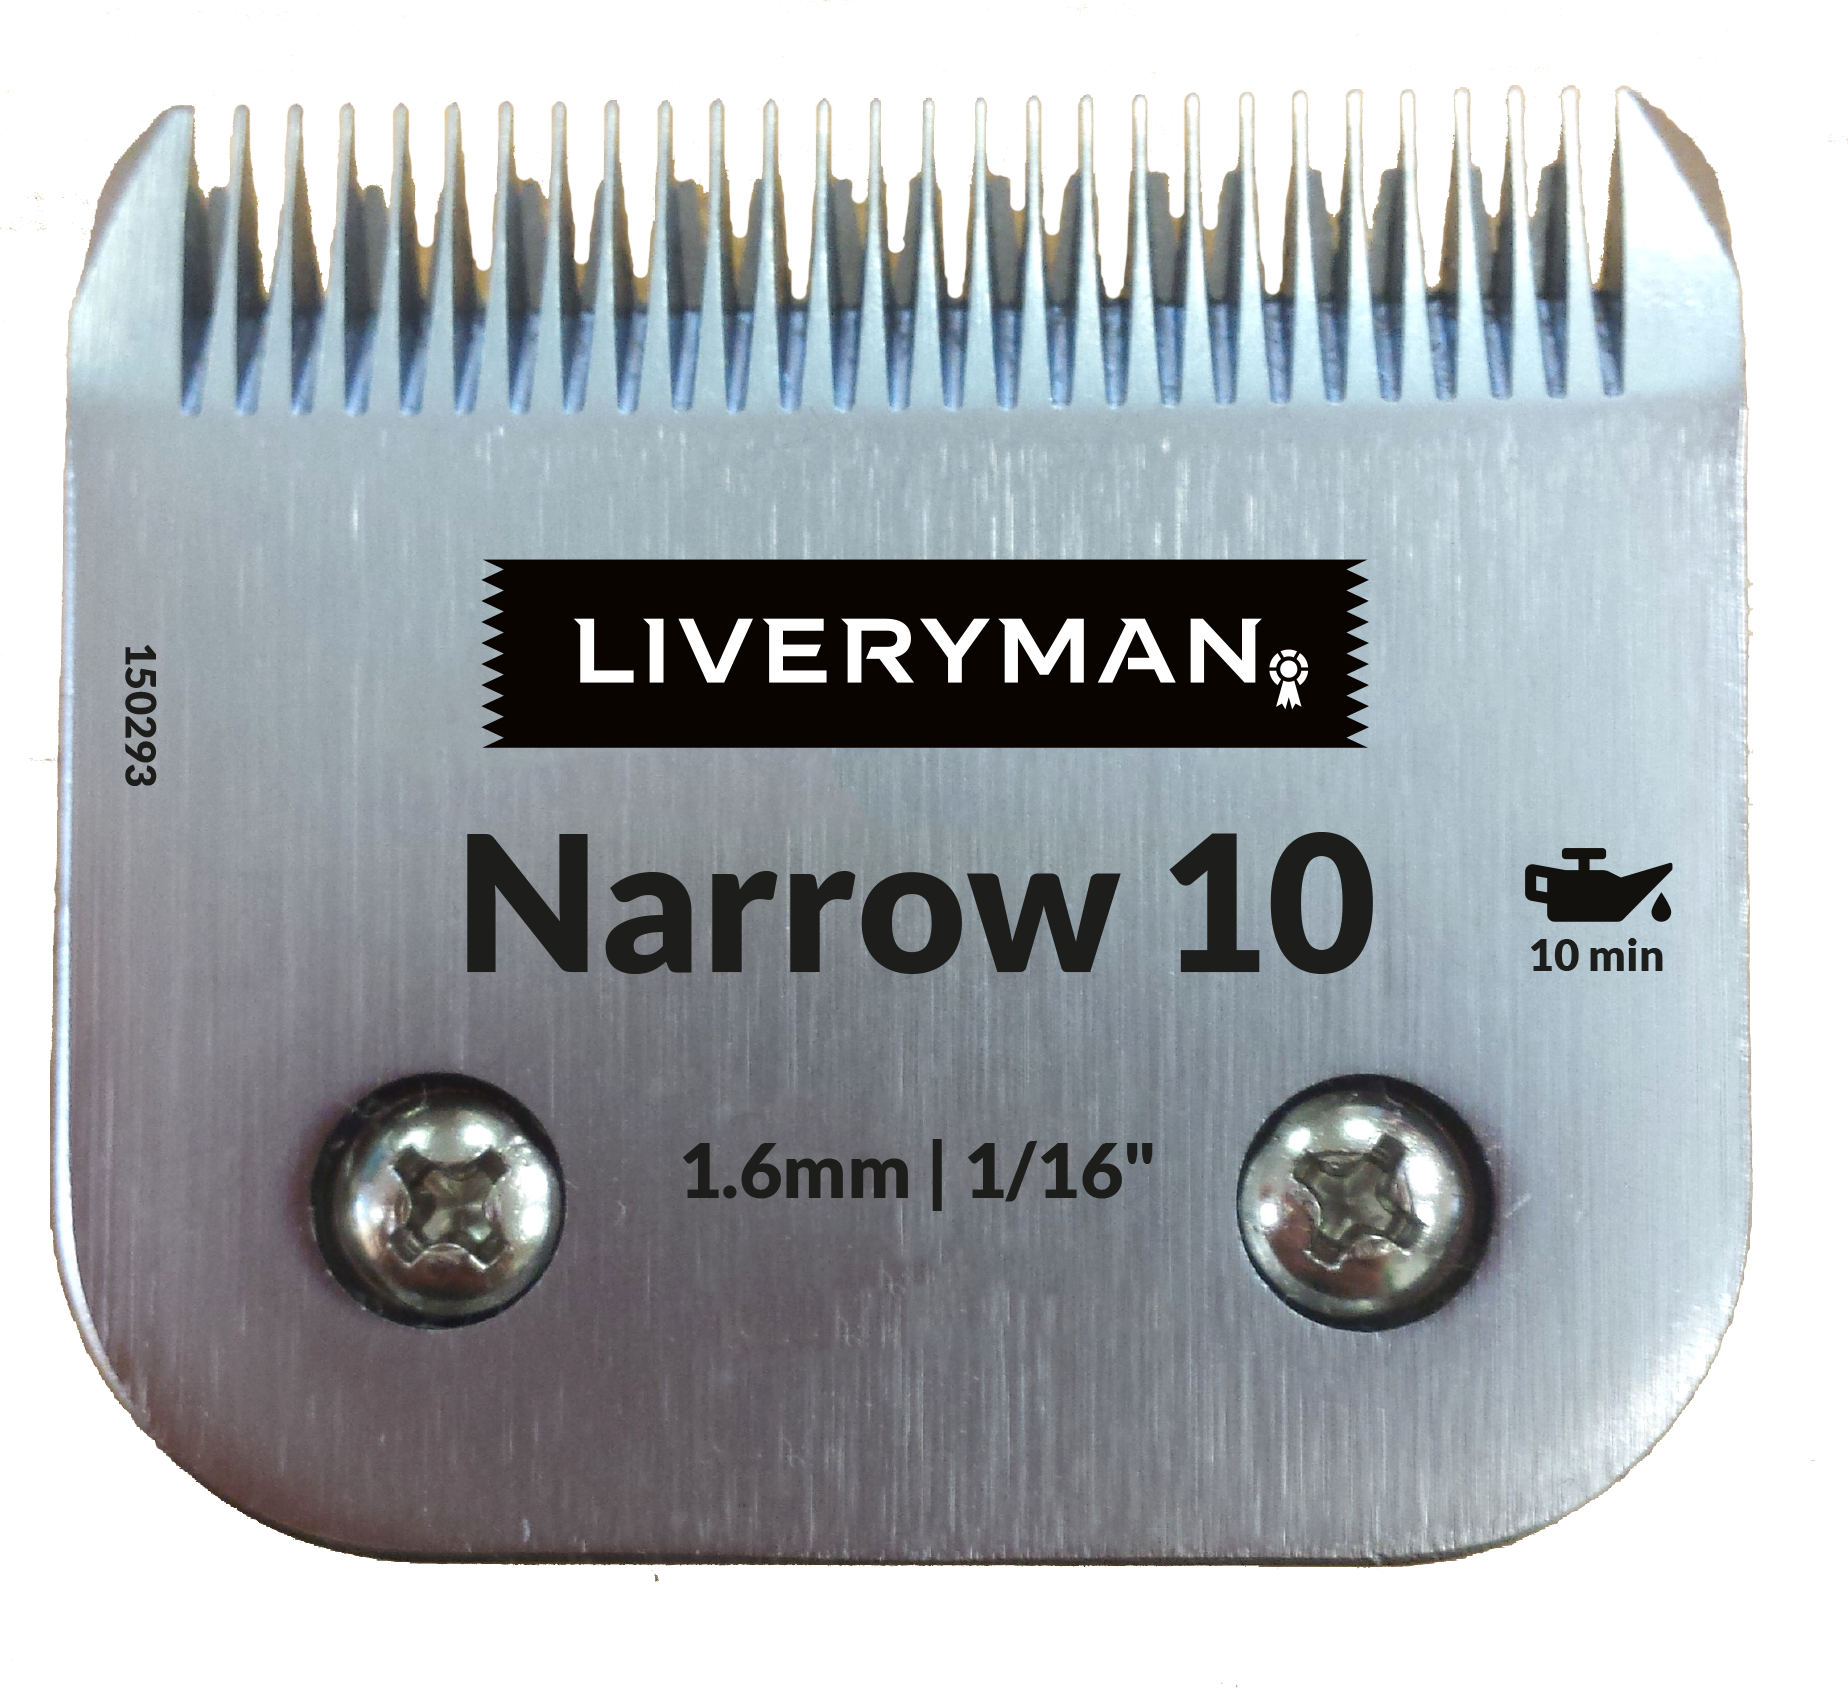 Harmony 1.6mm Narrow-10 Blades